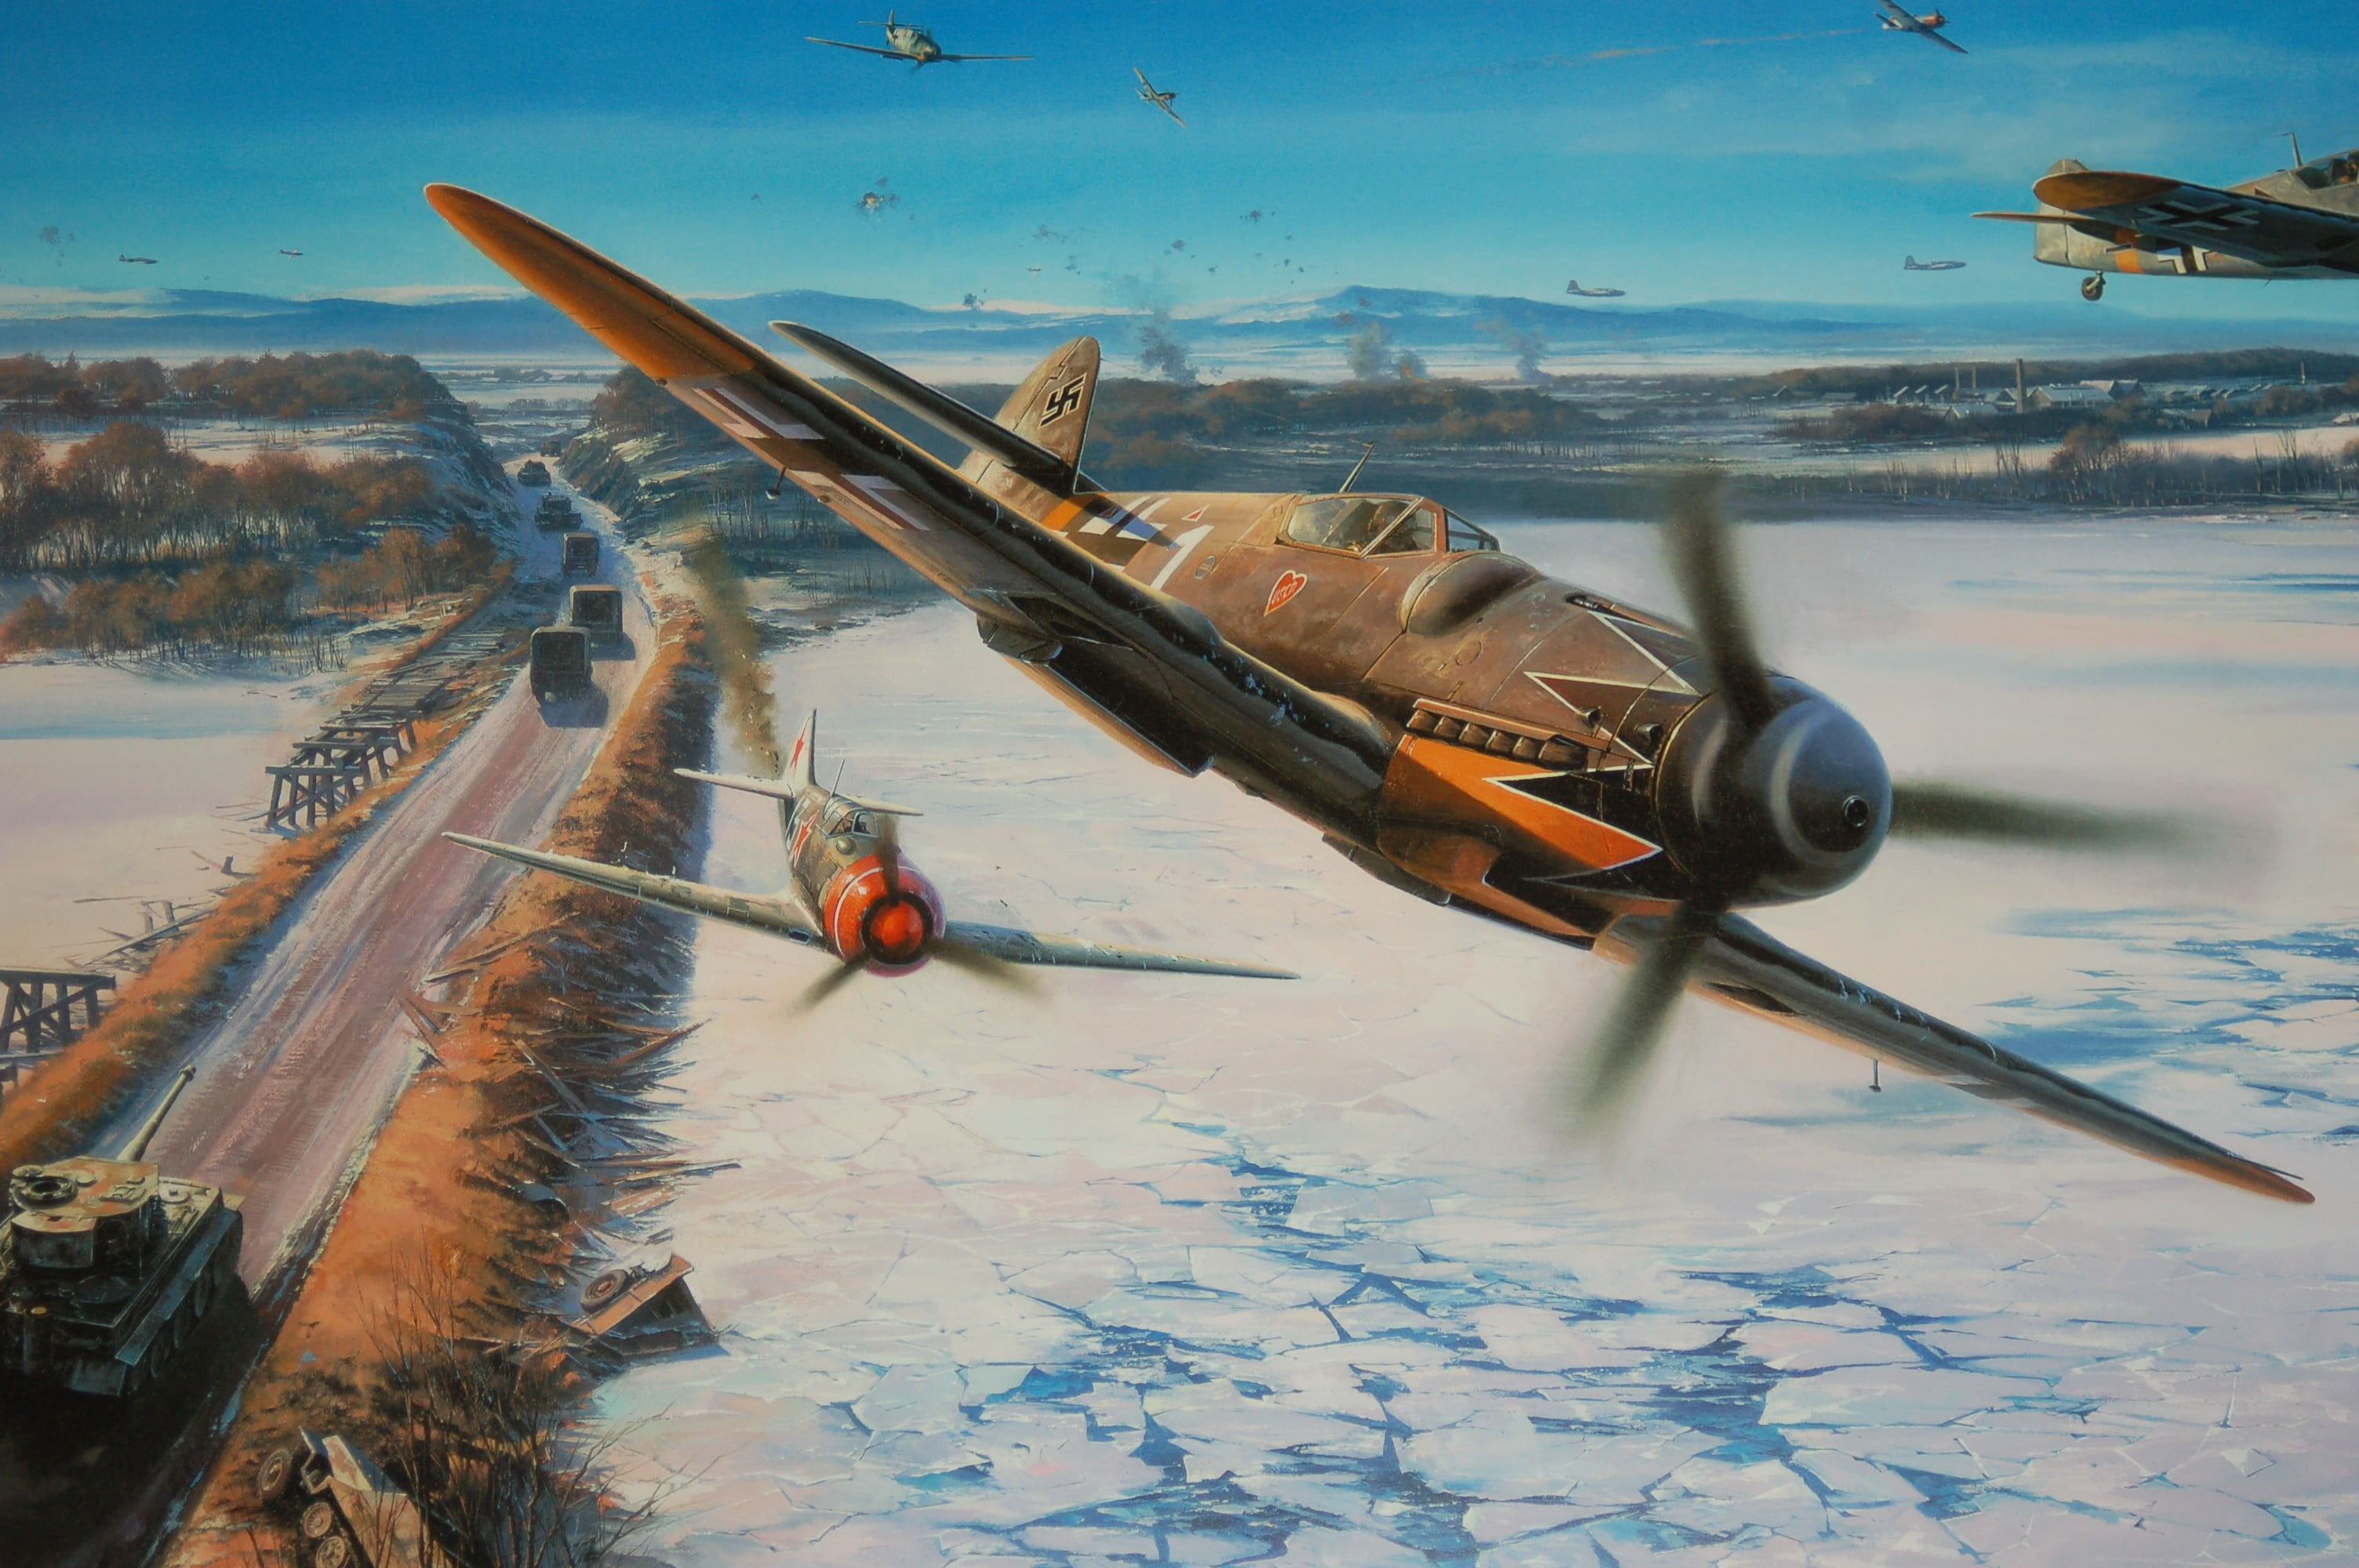 Brown And Gray Plane, World War Ii, Messerschmitt, - Erich Hartmann Bf 109 , HD Wallpaper & Backgrounds